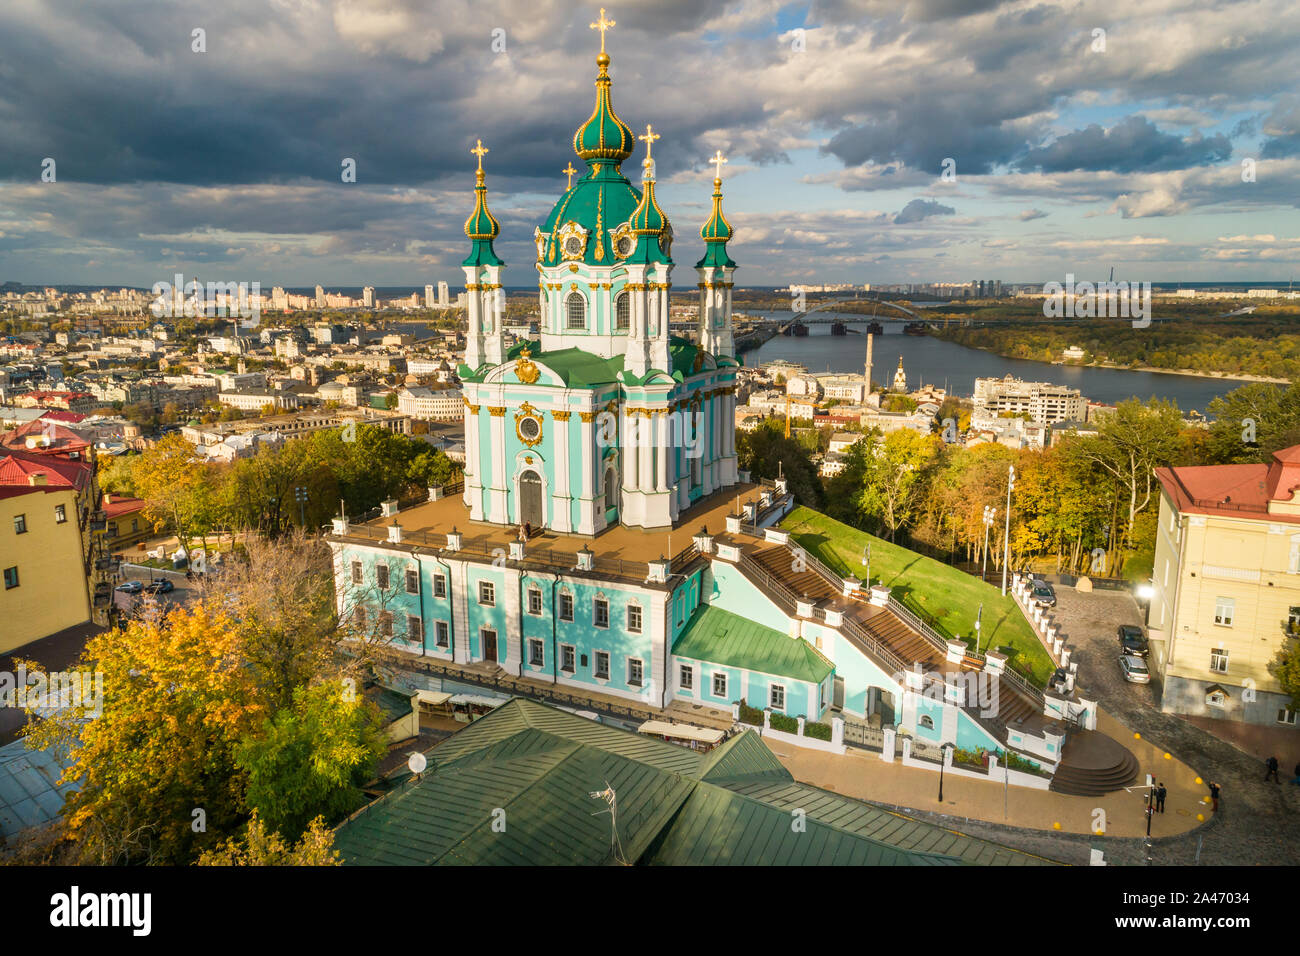 Antenne Herbst Landschaft Blick auf Saint Andrew's Church in 2019, Kiew, Ukraine. Berühmte religiöse und touristische Ort in Kiew. Stockfoto